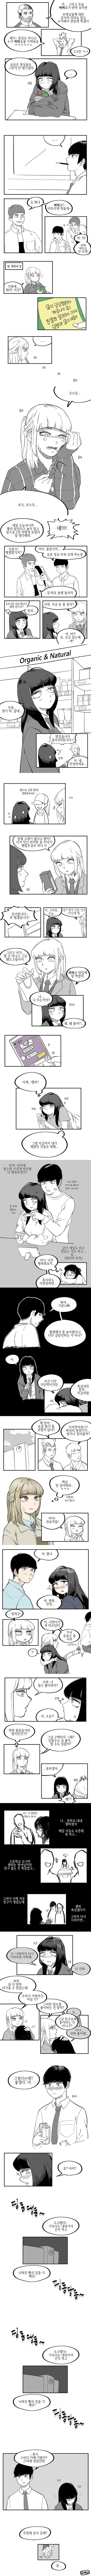 ㅆㄷㅈㅇ,스압,完)반 음침한 애한테 고백받기 30일전 ~ D-Day .manhwa